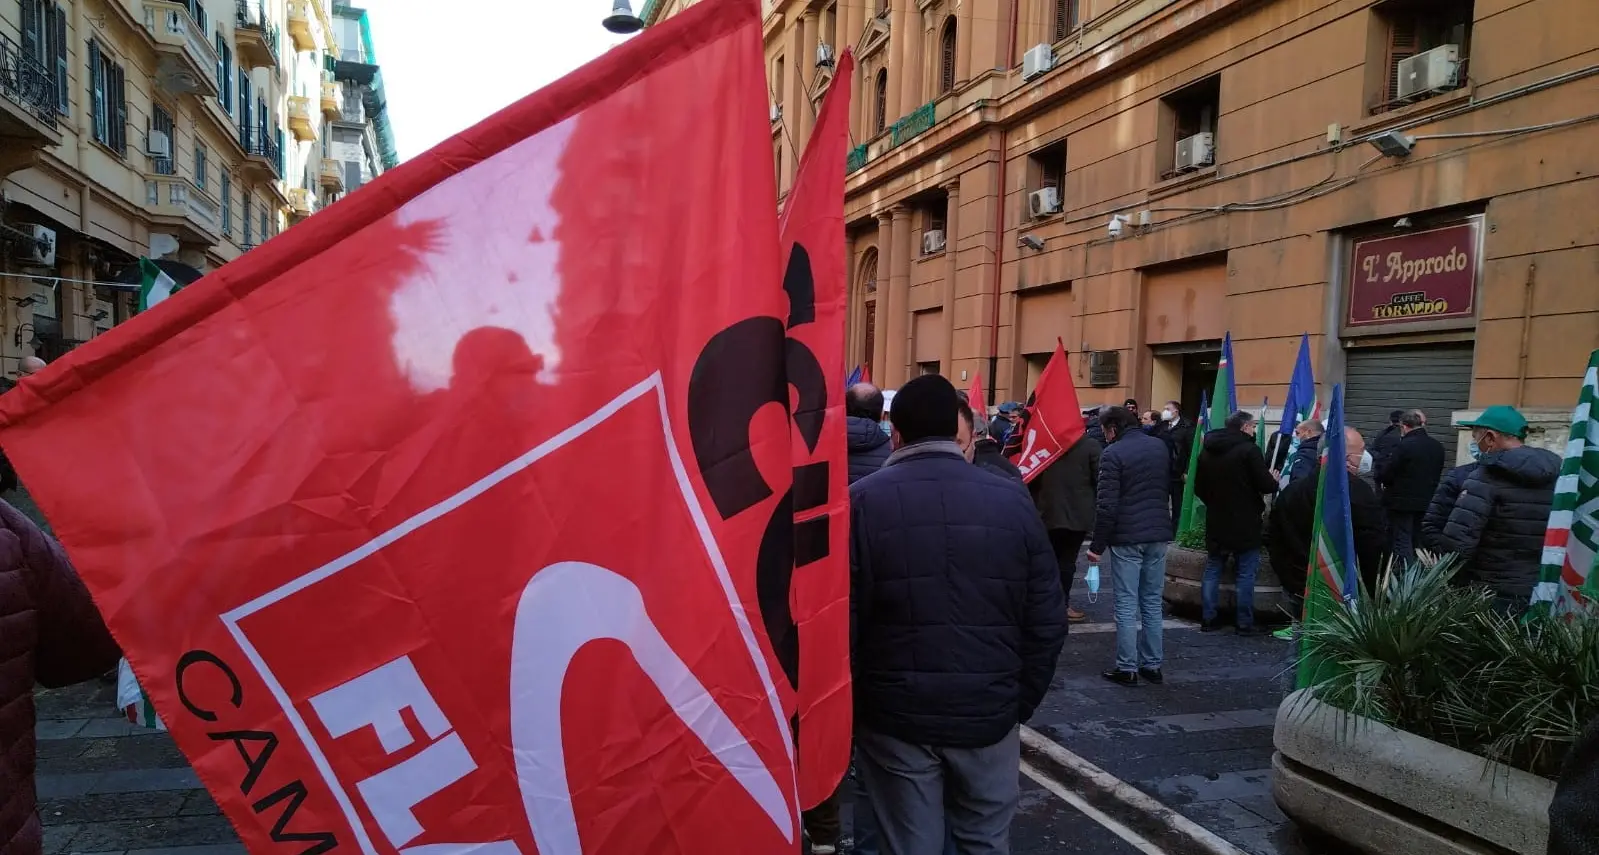 A Napoli la protesta dei forestali campani continua